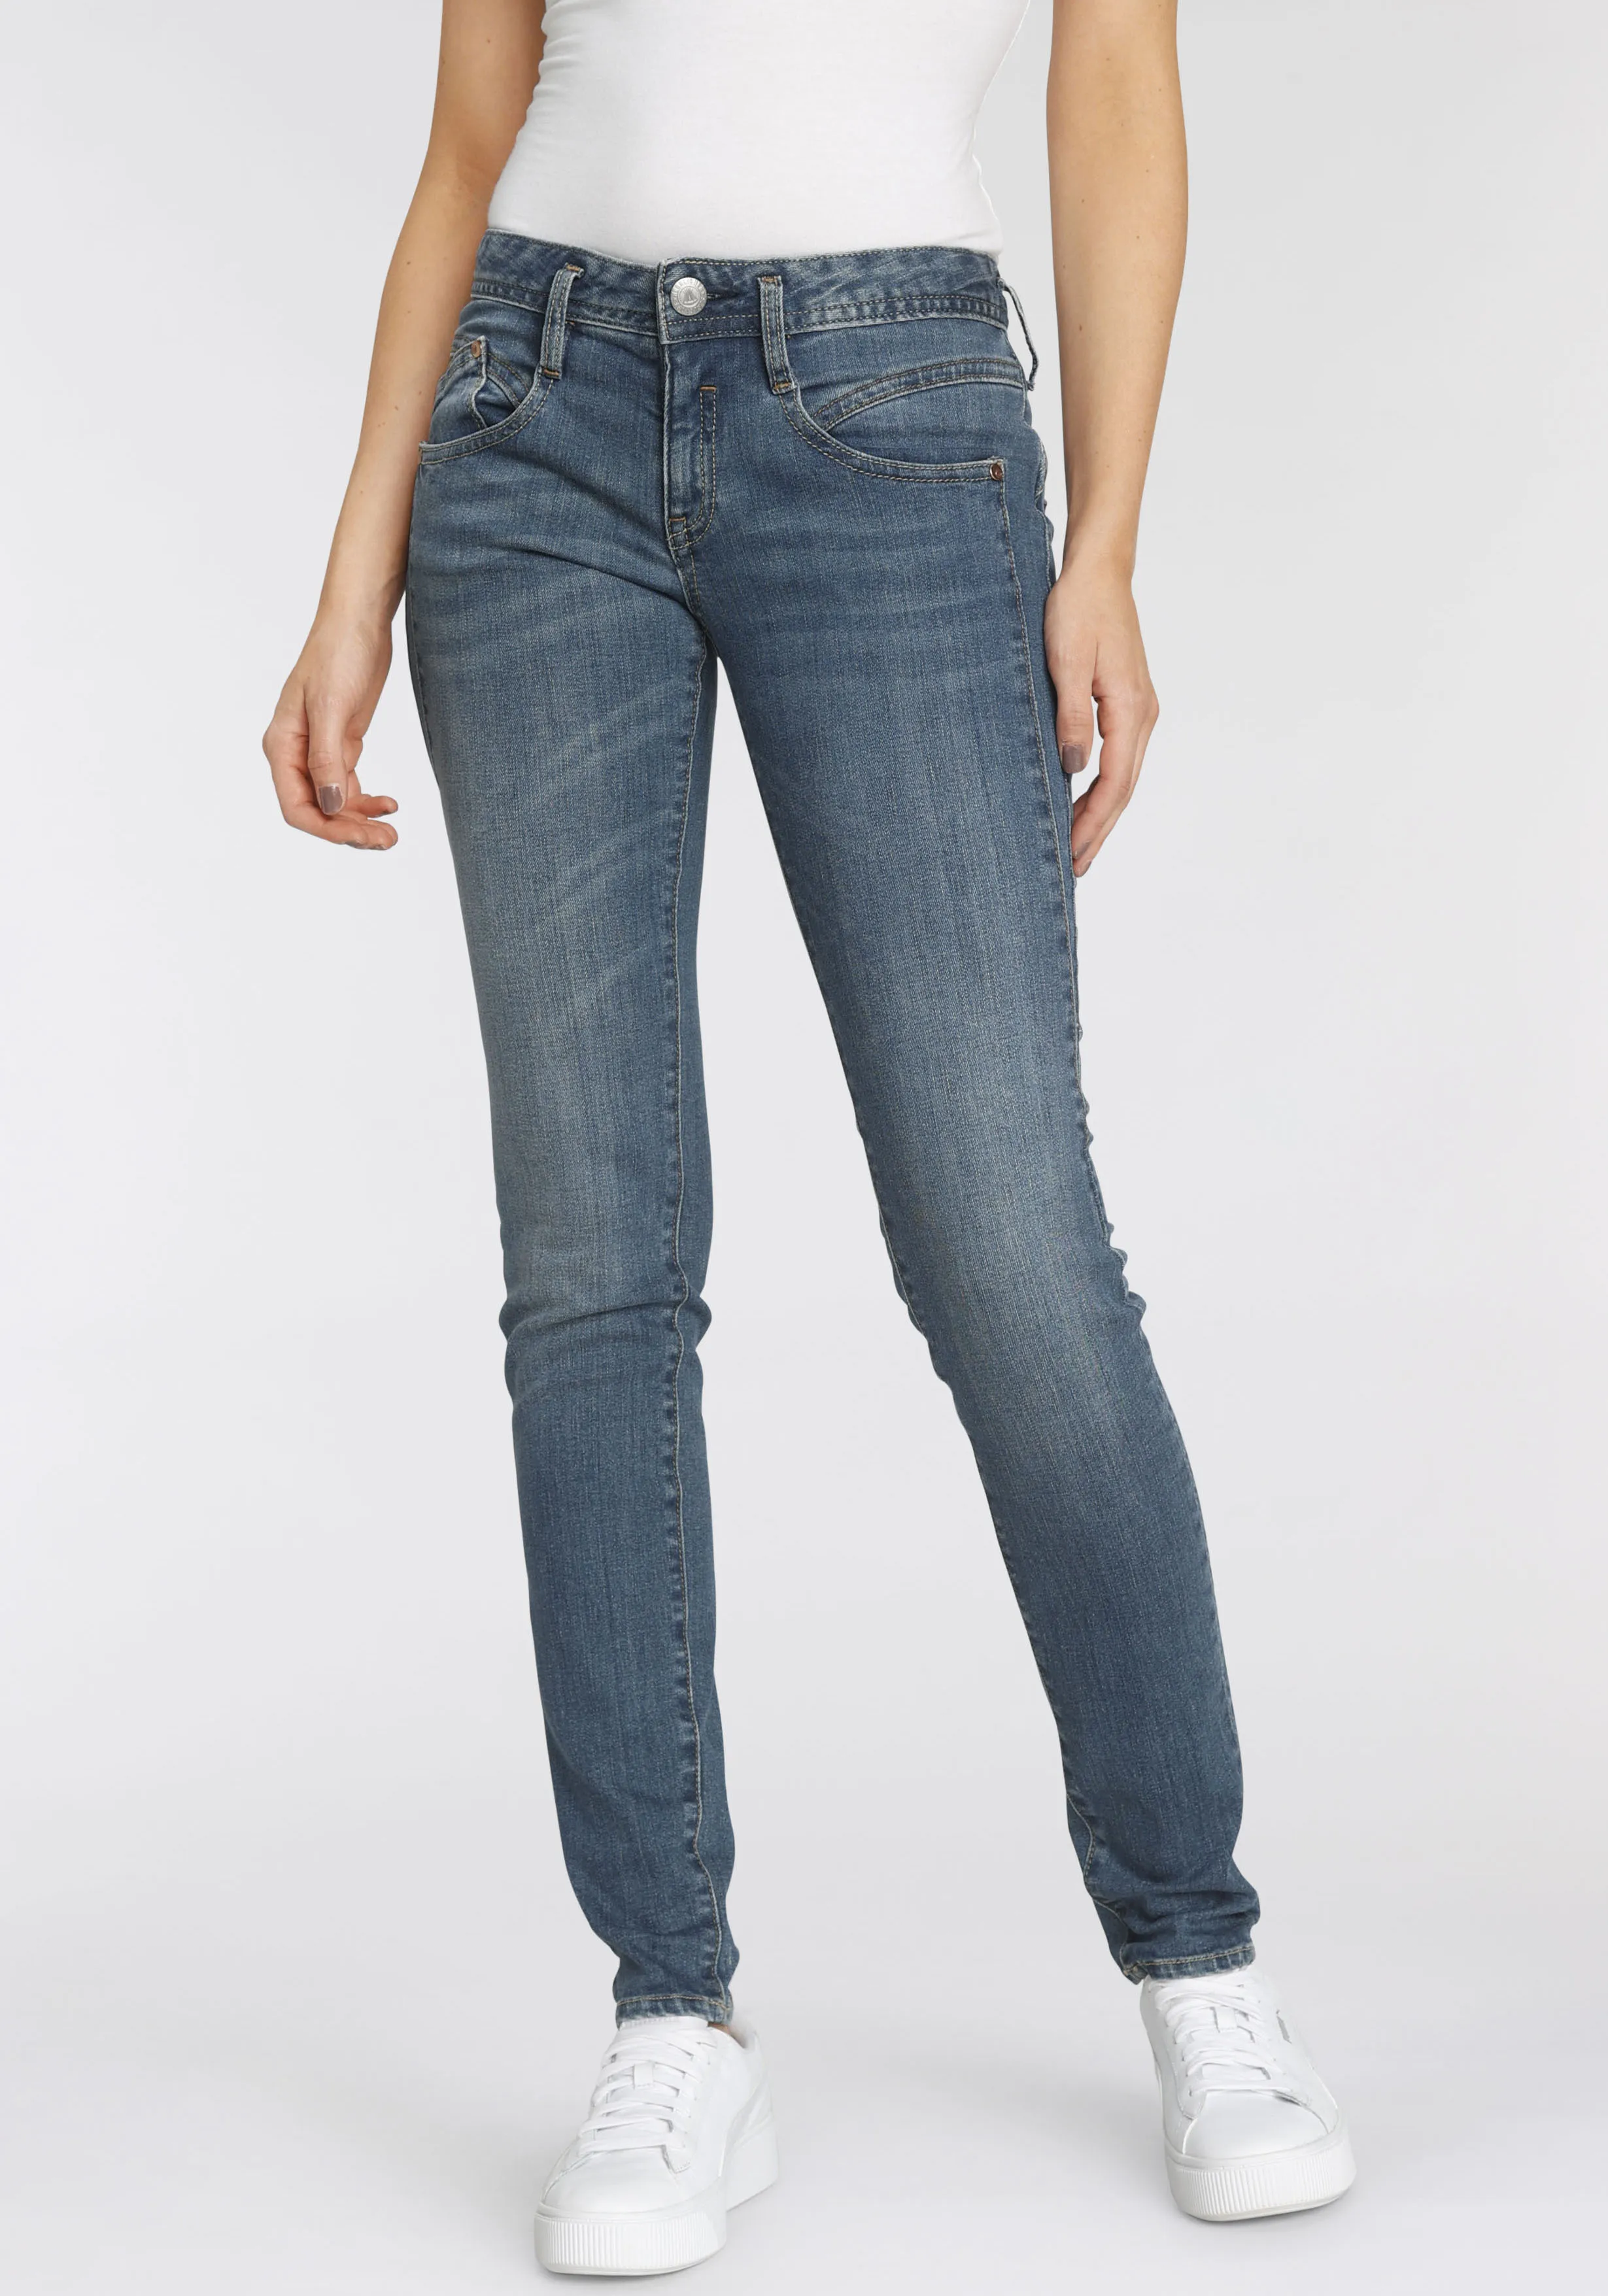 Slim-fit-Jeans HERRLICHER "GINA RECYCLED DENIM" Gr. 25, Länge 32, blau (medium eco) Damen Jeans Röhrenjeans mit seitlichem Keileinsatz